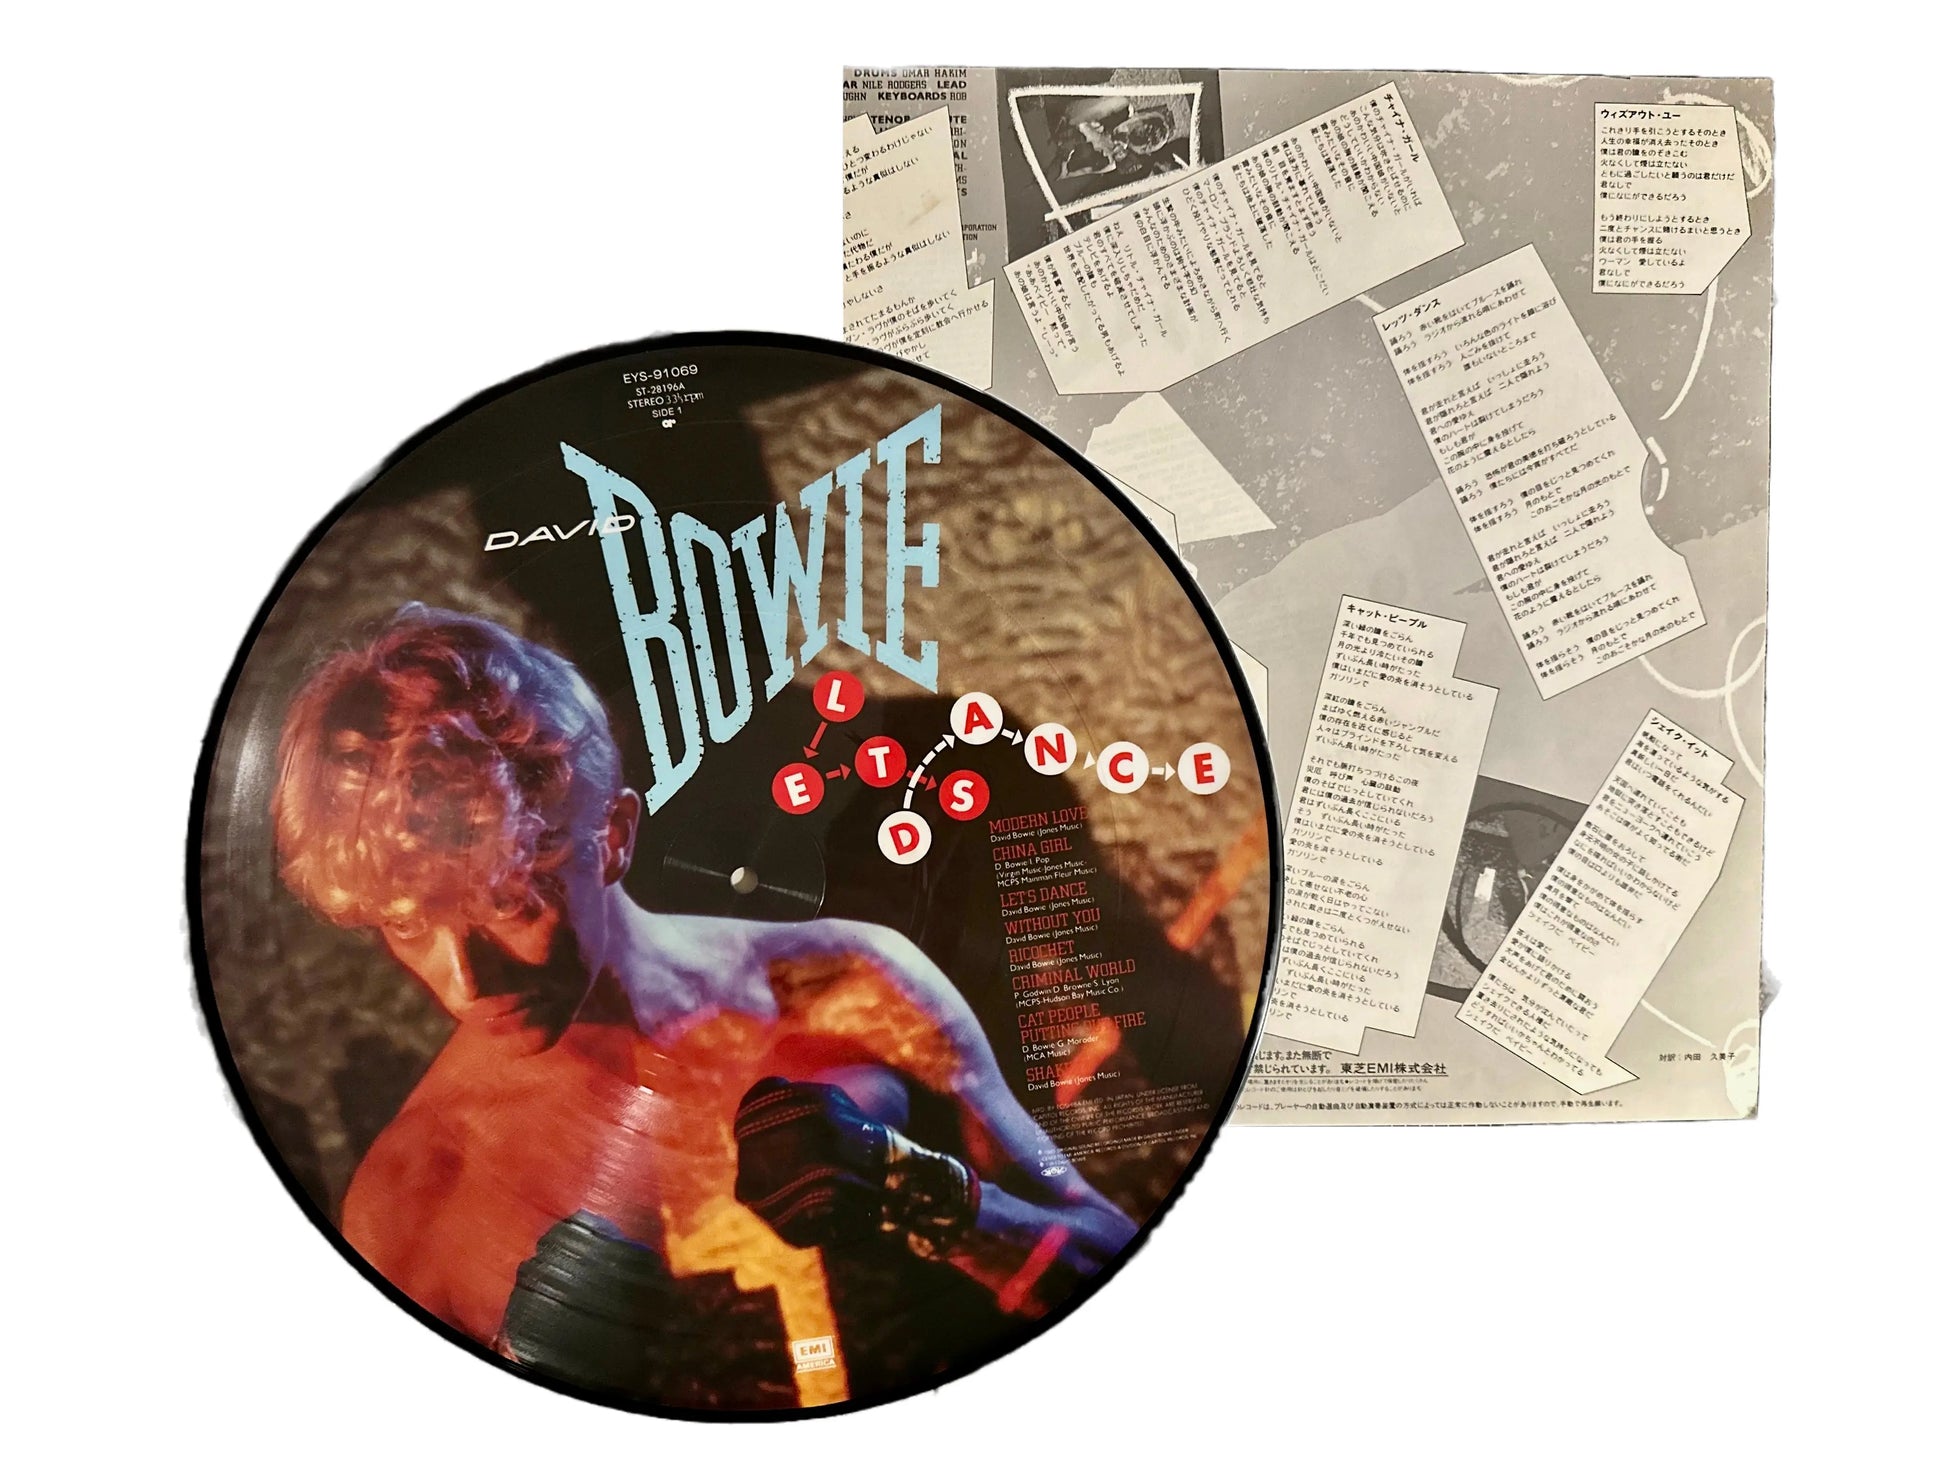 David Bowie - Let's Dance [Original Japanese Pressing Picture Disc Vinyl LP]